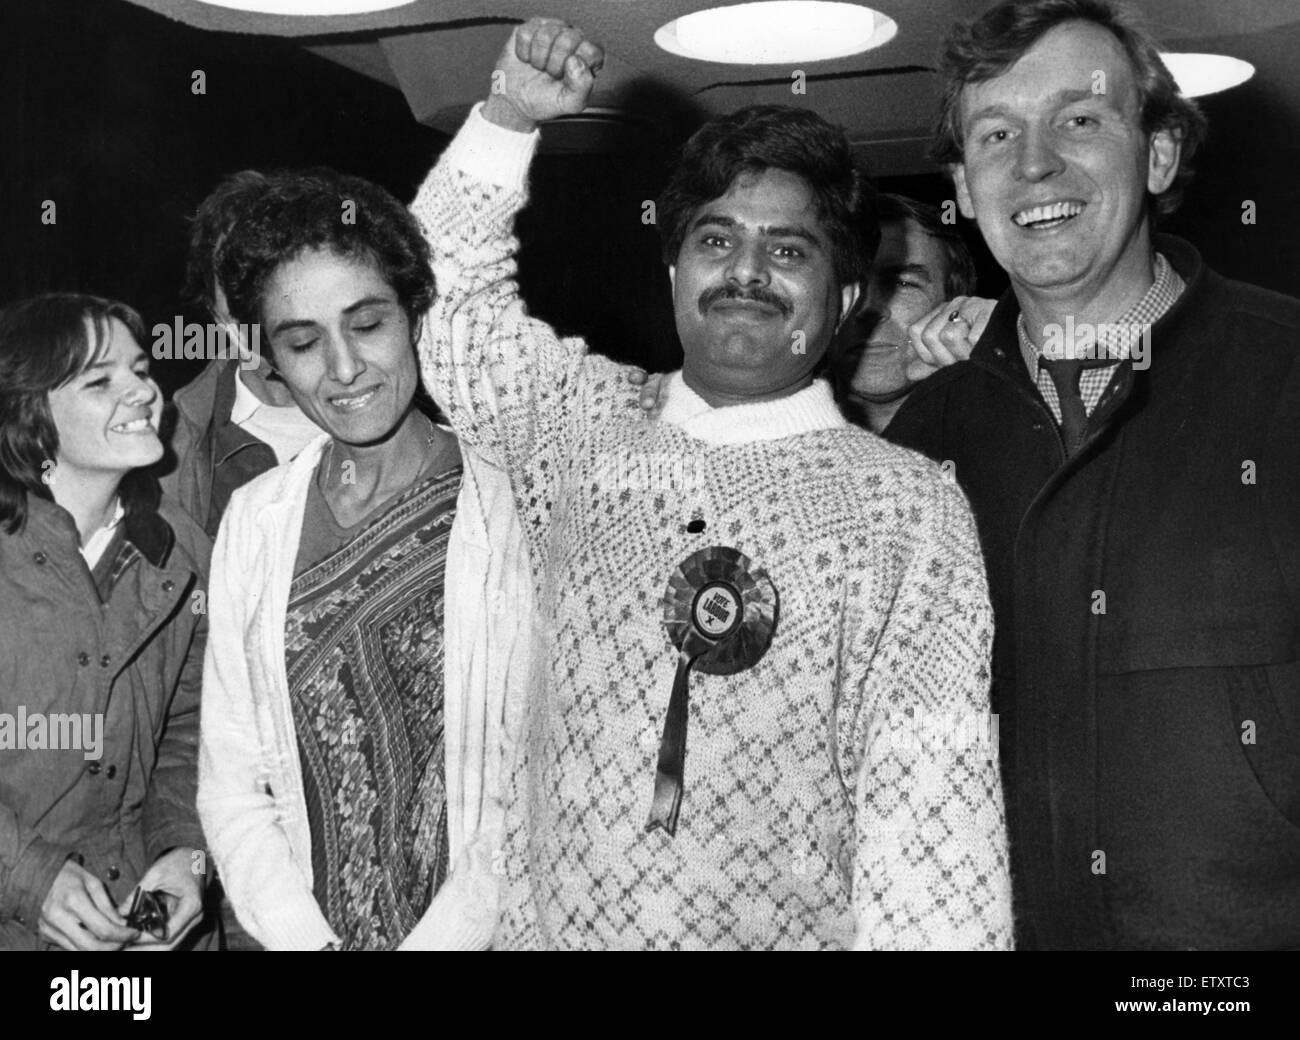 Elektriker Raj Malhotra, gewinnt die unteren Stoke Nachwahl, die erste asiatisch-Stadträtin für Coventry zu werden. Abgebildete 19. November 1987. Stadtrat Raj Malhotra vertreten niedriger schüren, für die Labour Party von 1987 bis 1992. Stockfoto